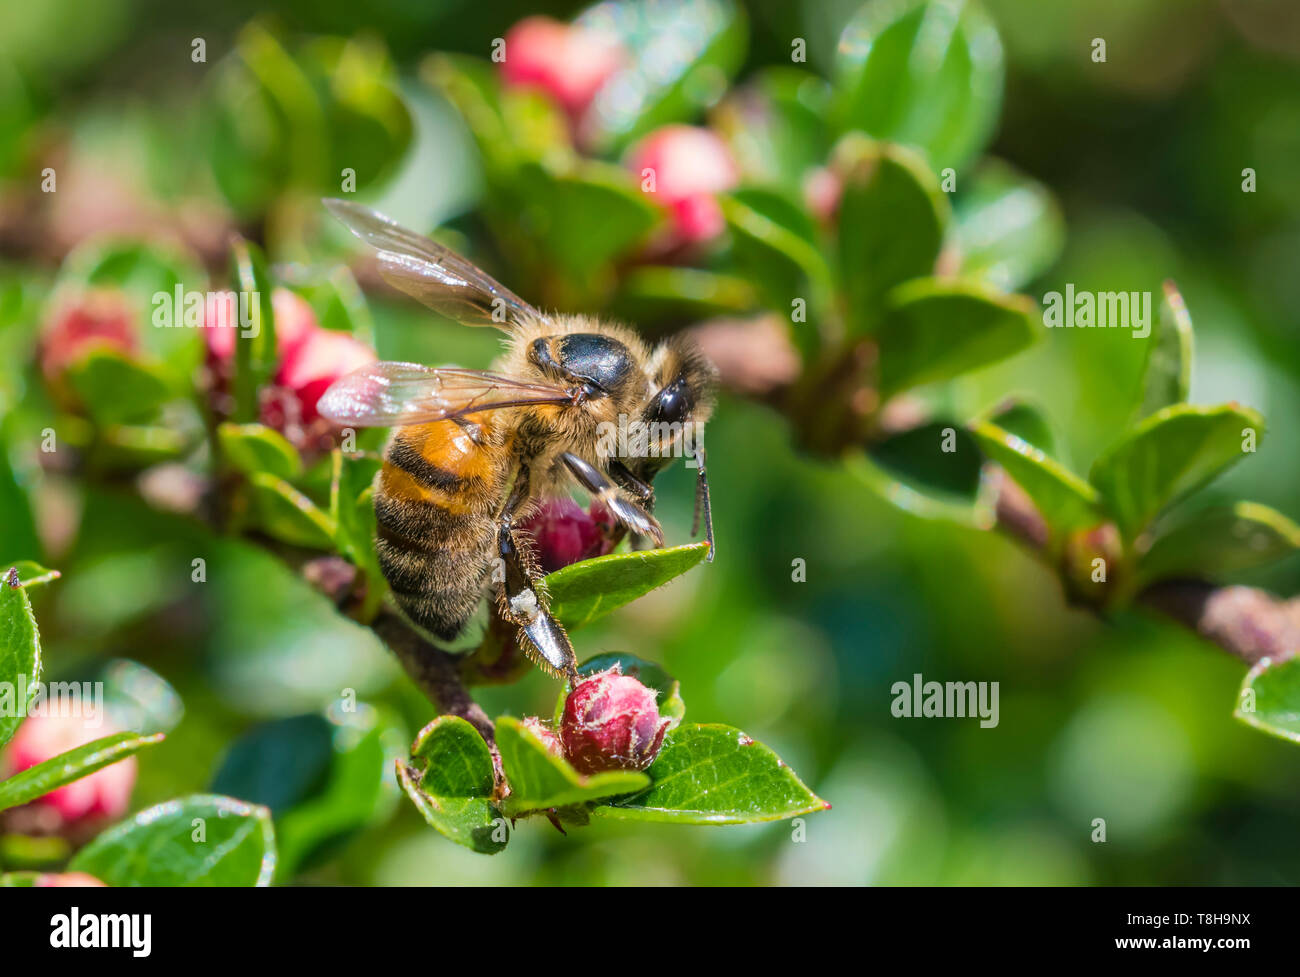 Die westliche Honigbiene (Apis mellifera), aka Europäischen Honigbiene, auf einer Pflanze mit roten Knospen im Frühjahr (Mai) in West Sussex, England, UK. Honigbienen. Stockfoto